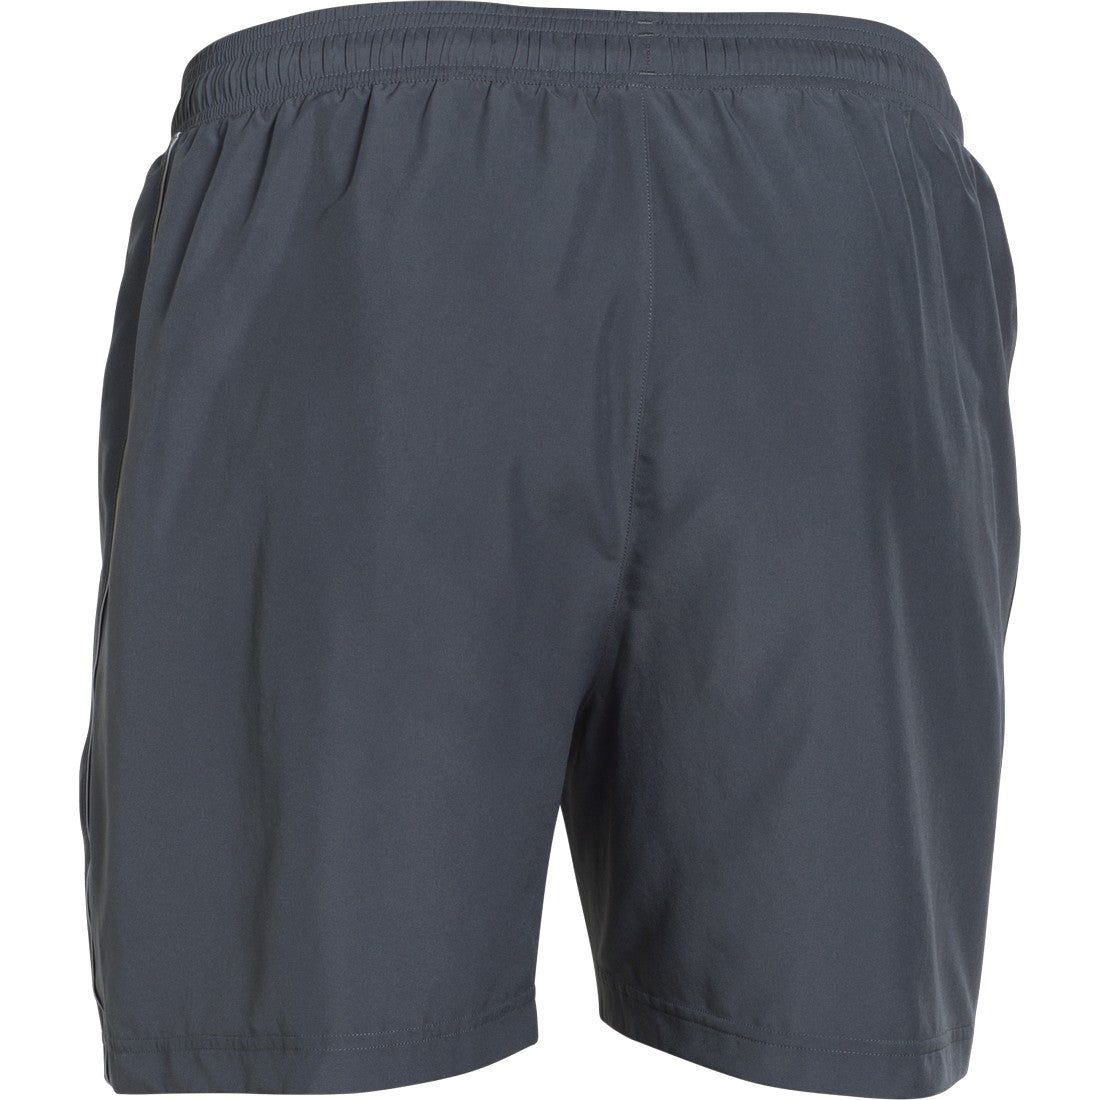 Pantalon corto (Short) de 5 pulgadas para hombre de Under Armour